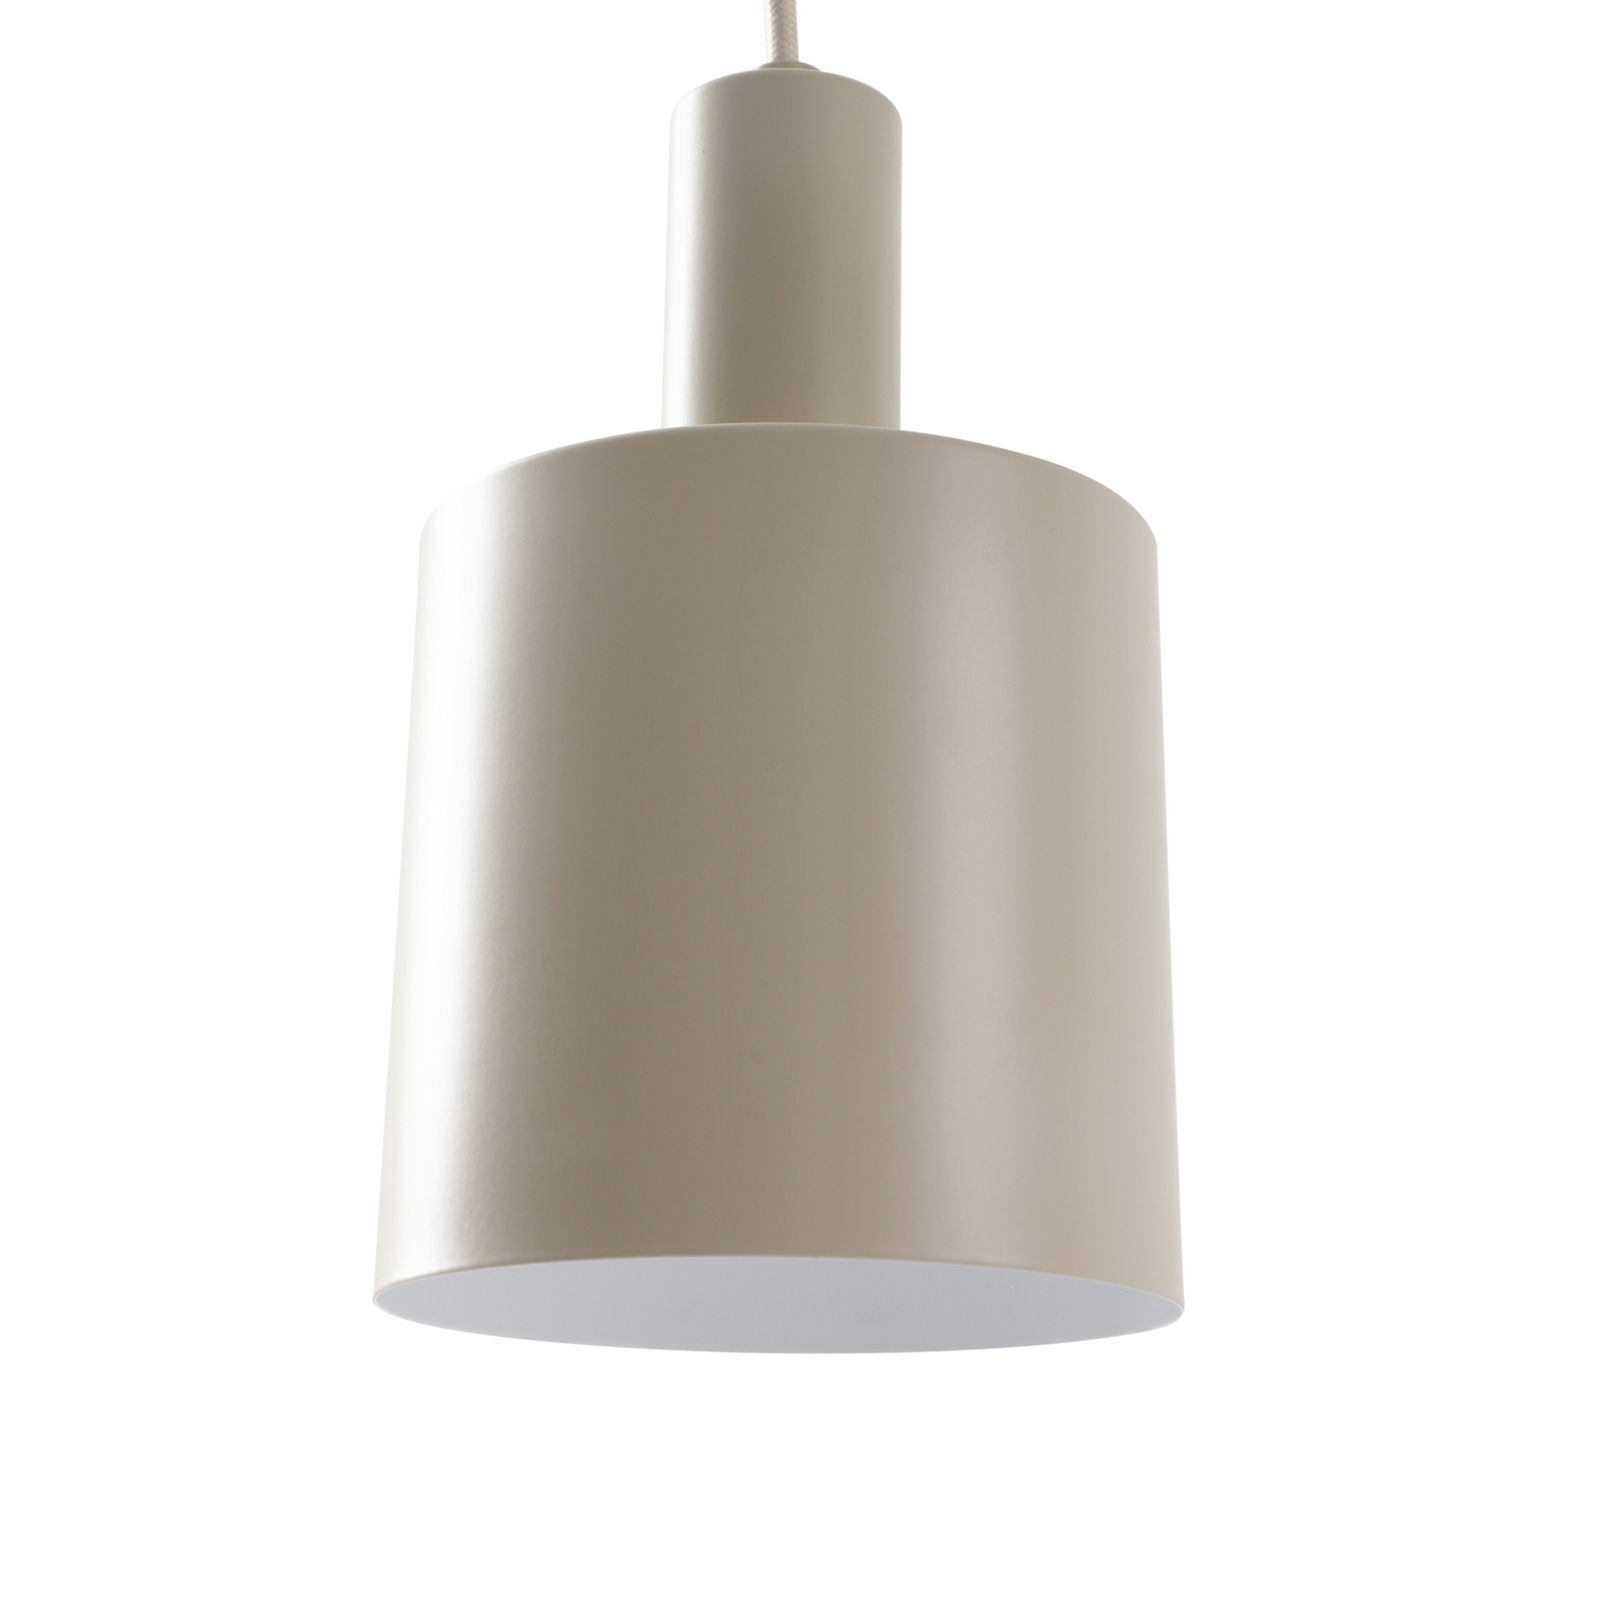 Lindby hanglamp Ovelia, beige, rond, 3-lamps.